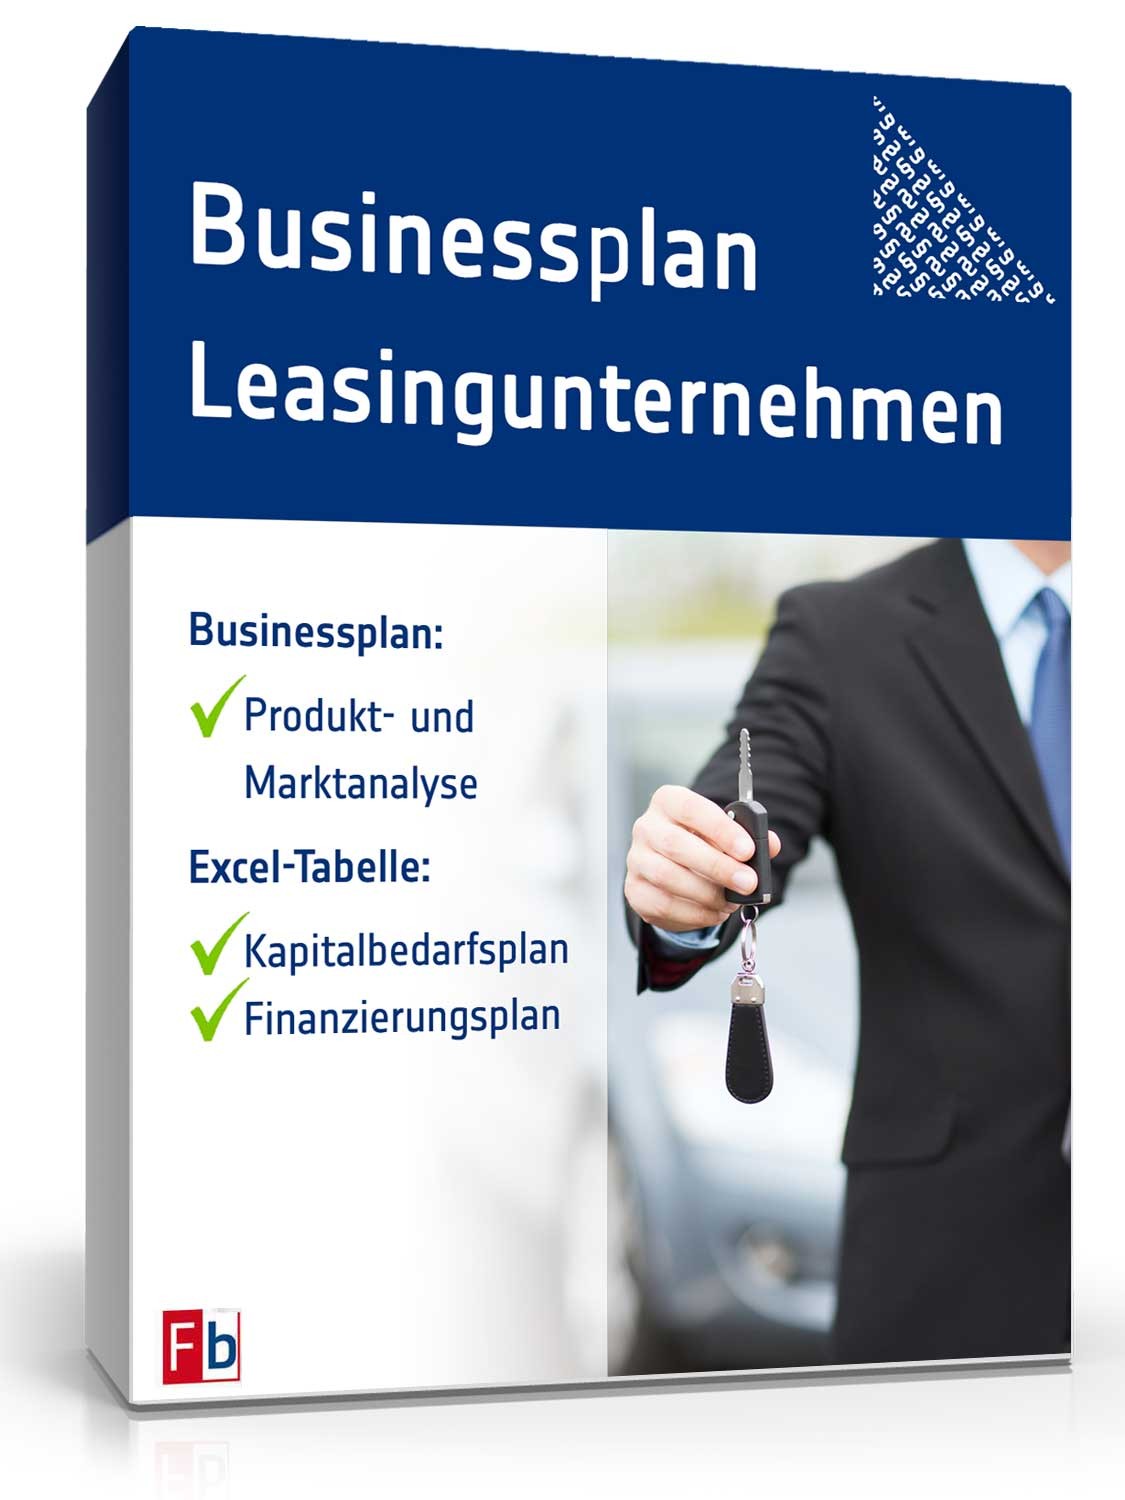 Hauptbild des Produkts: Businessplan für ein Leasingunternehmen